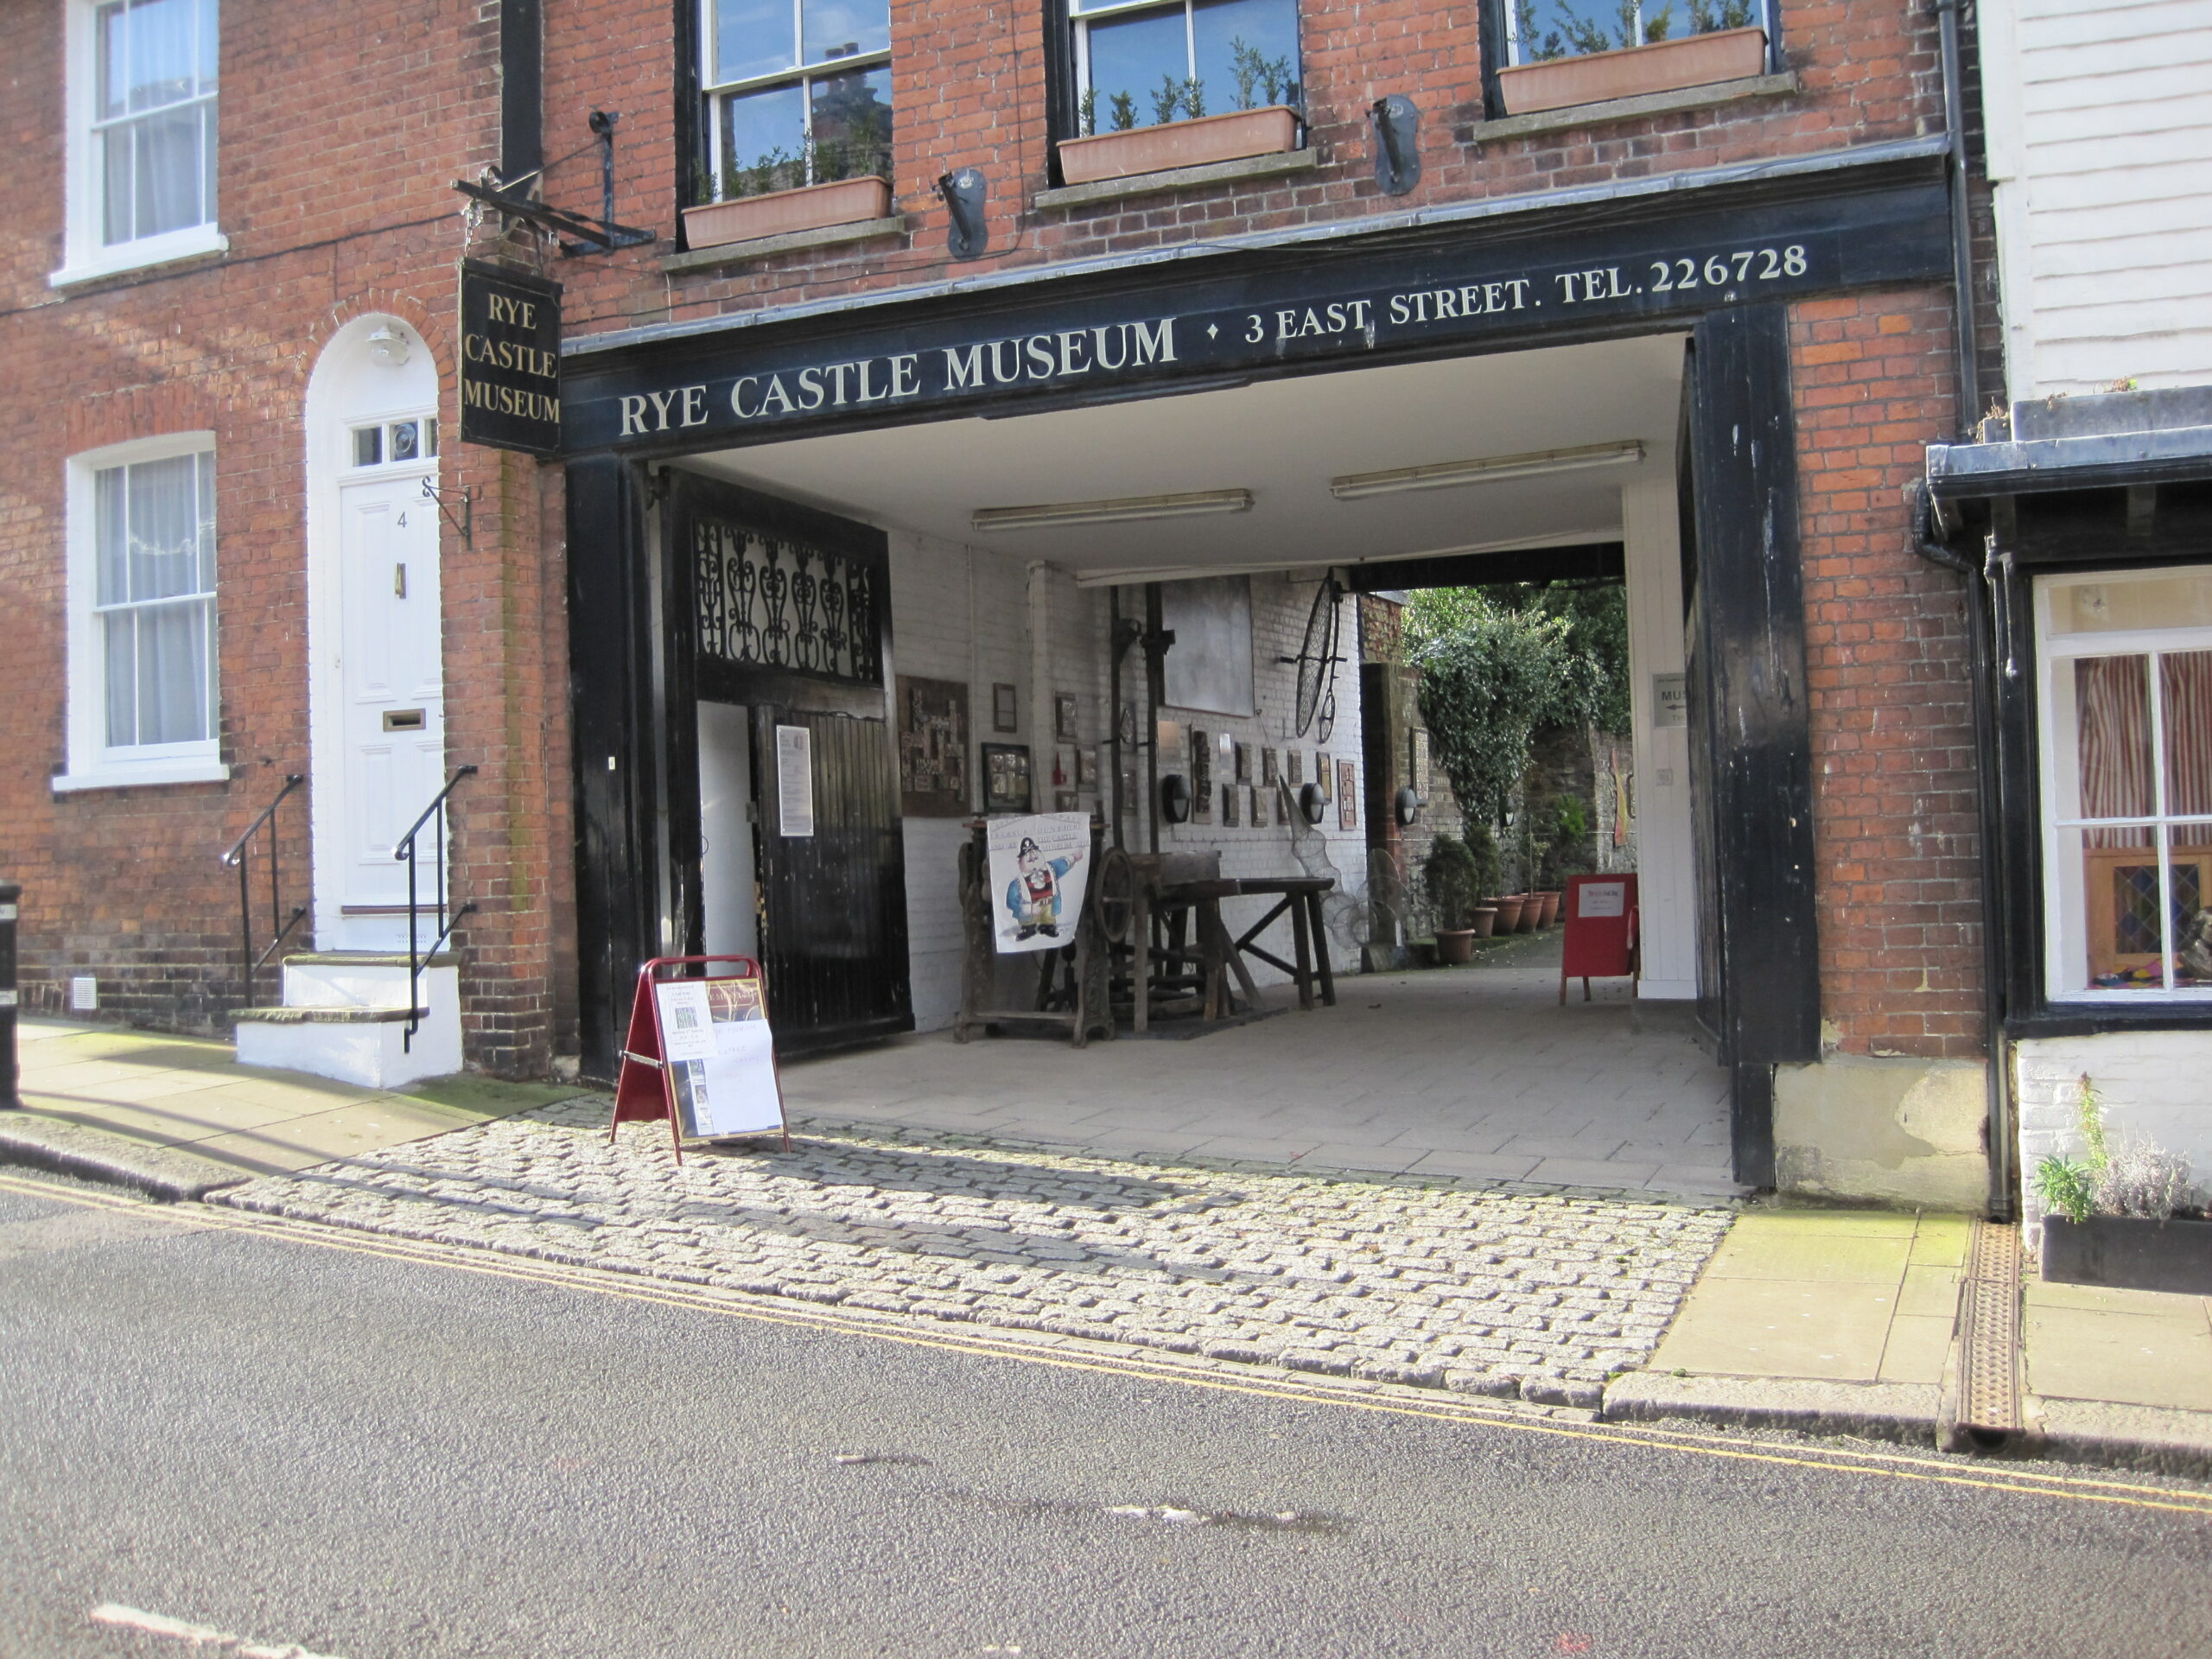 Rye Museum: East Street